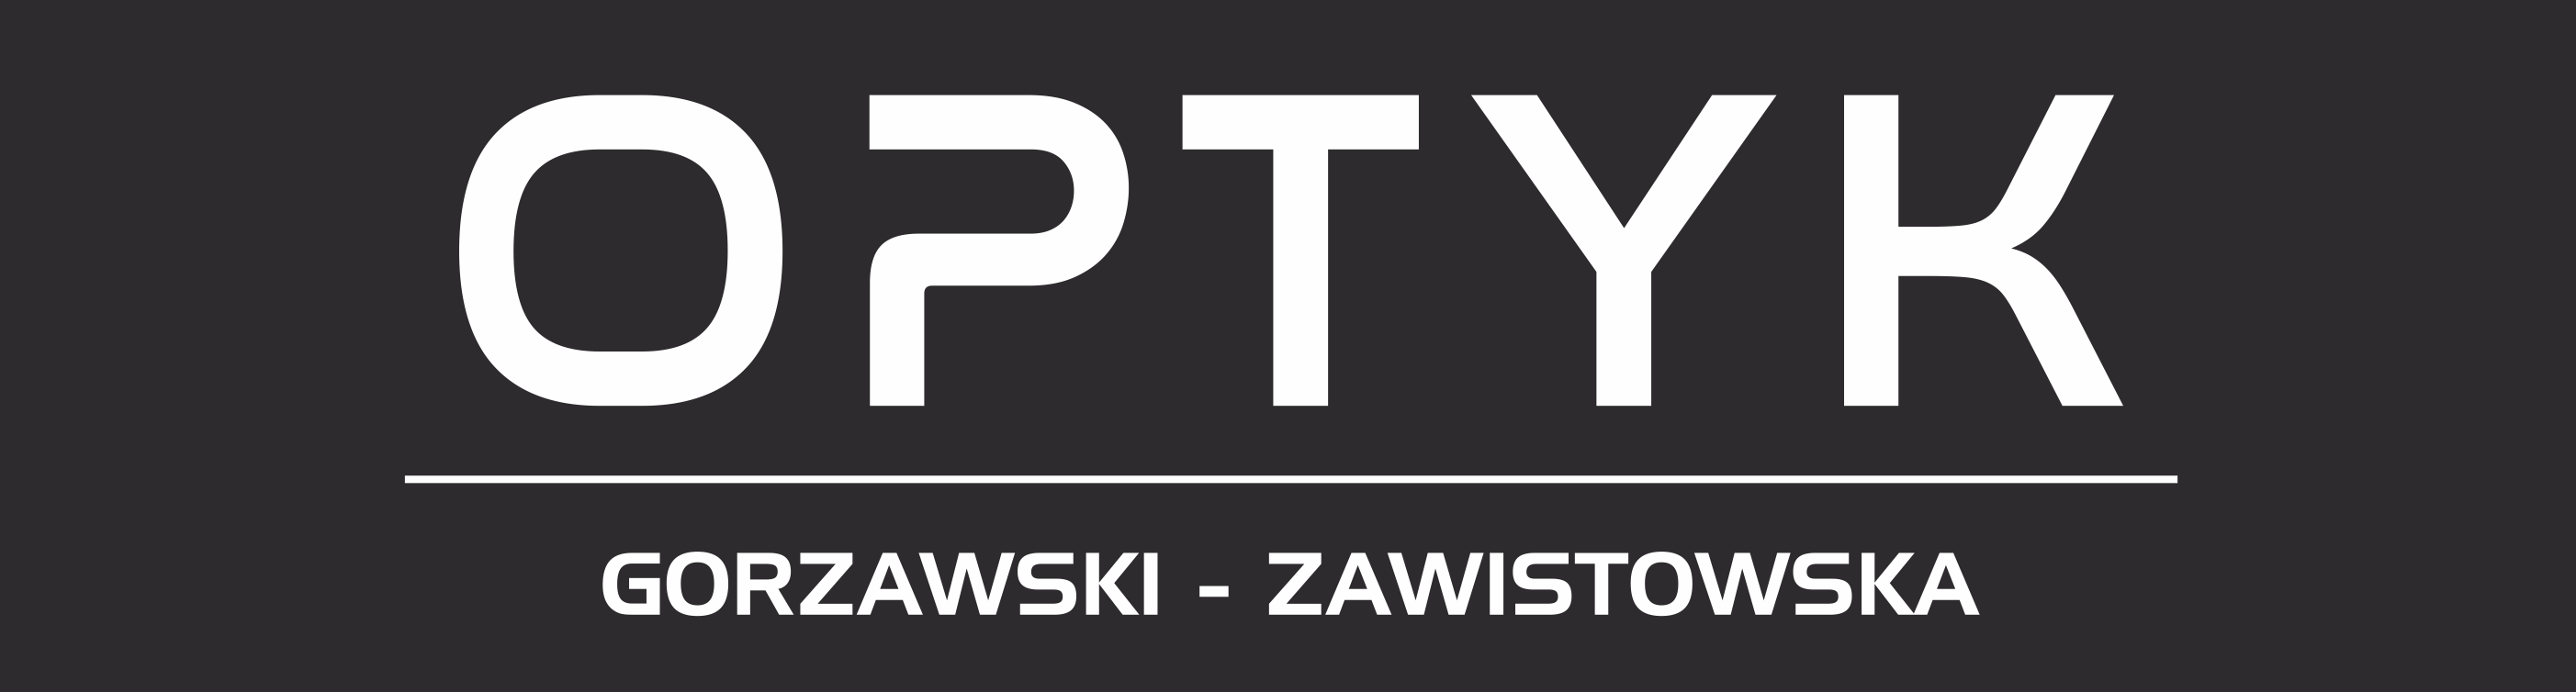 Optyk s.c. Gorzawski Zawistowska